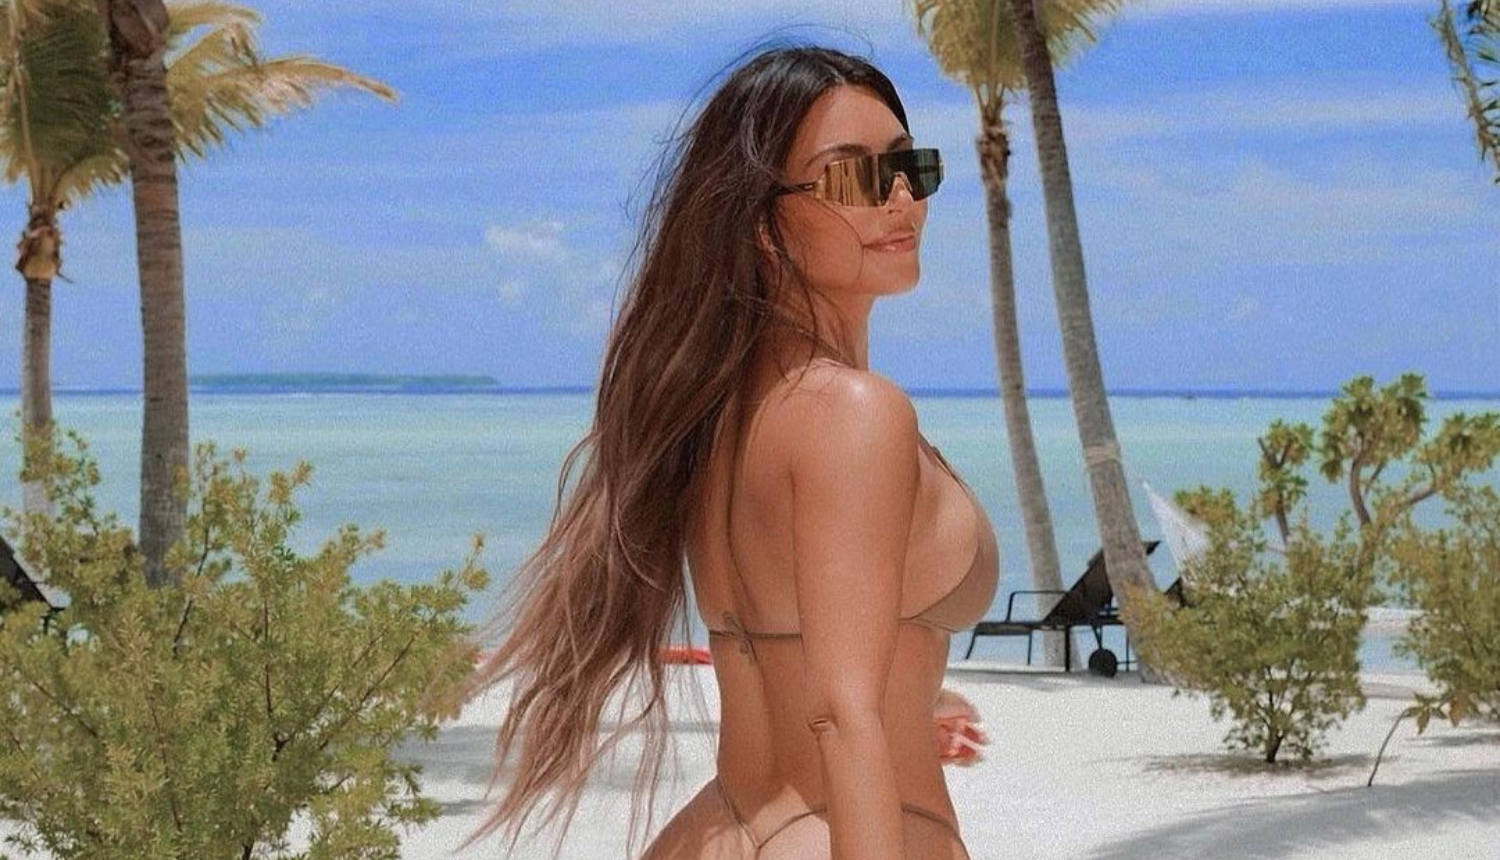 Kardashianka 'popeglala' guzu? Pratitelji ju kritiziraju: 'Postala si traljava, kuži se Photoshop'